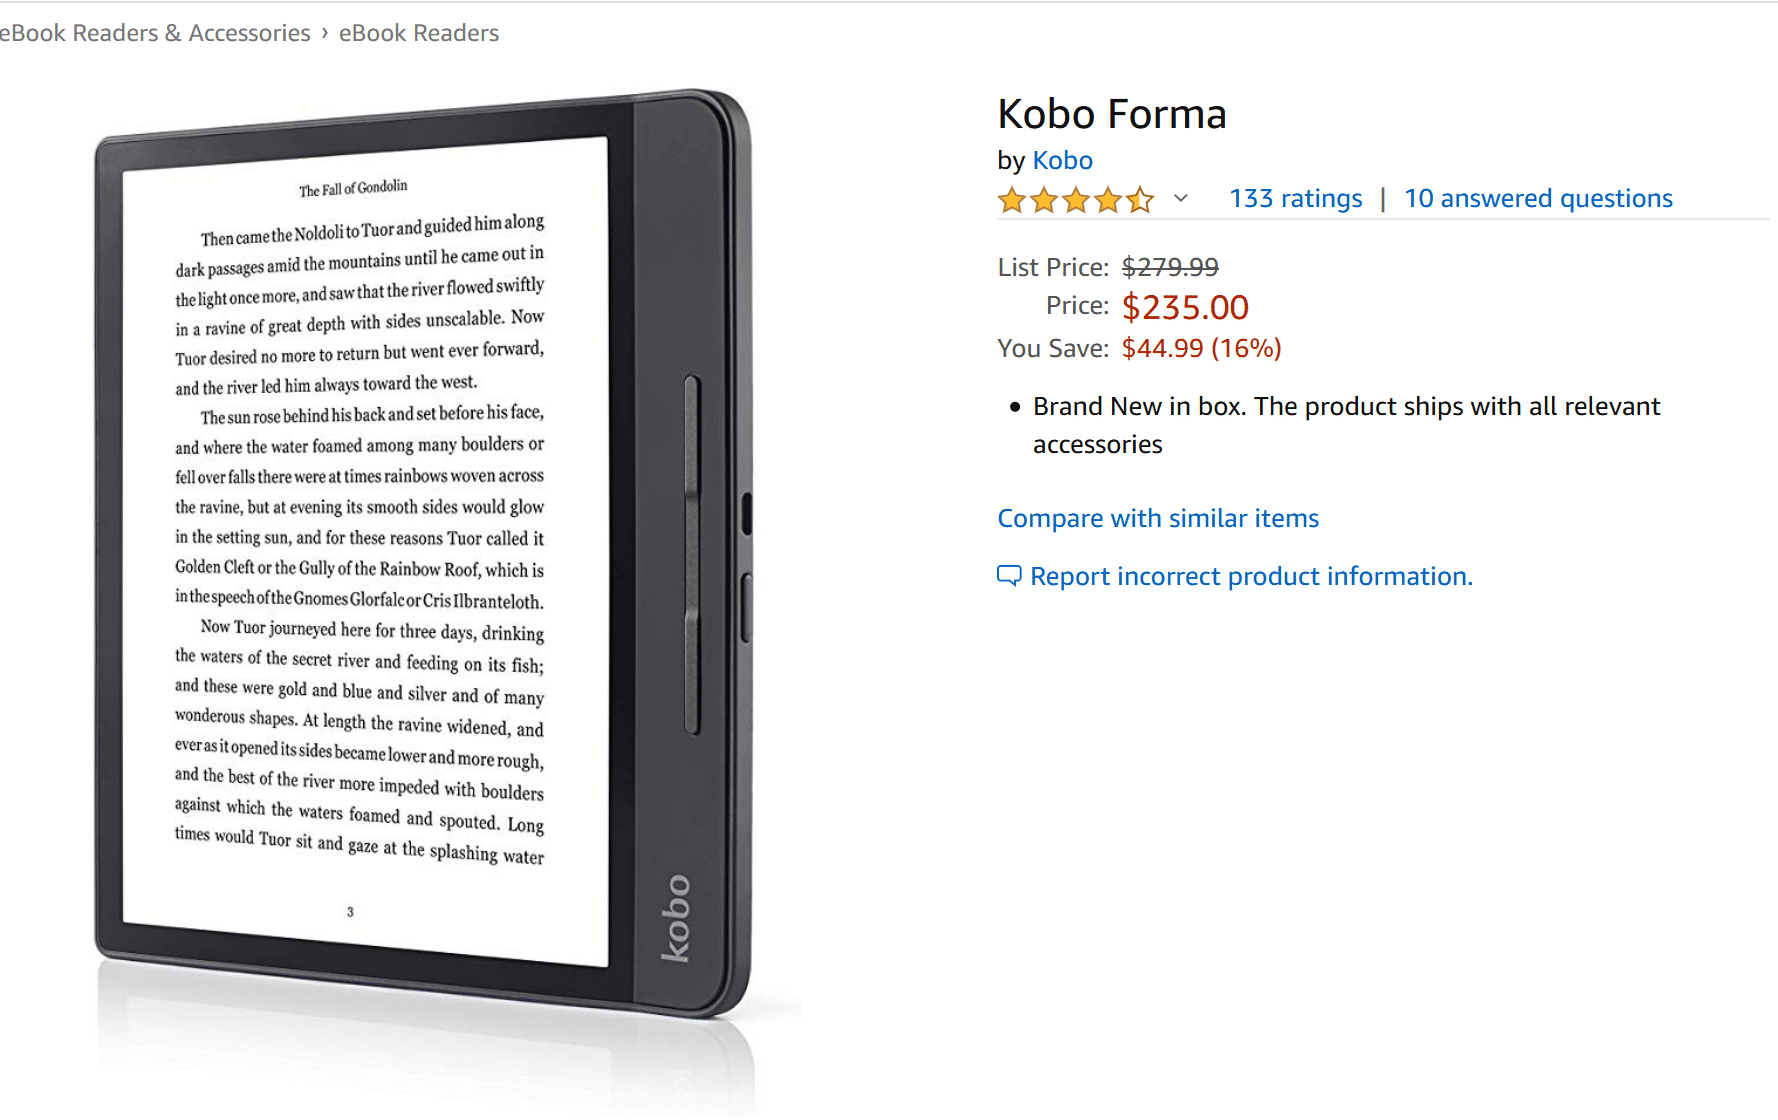 Kobo Forma dijual di Amazon dengan harga yang sangat bagus